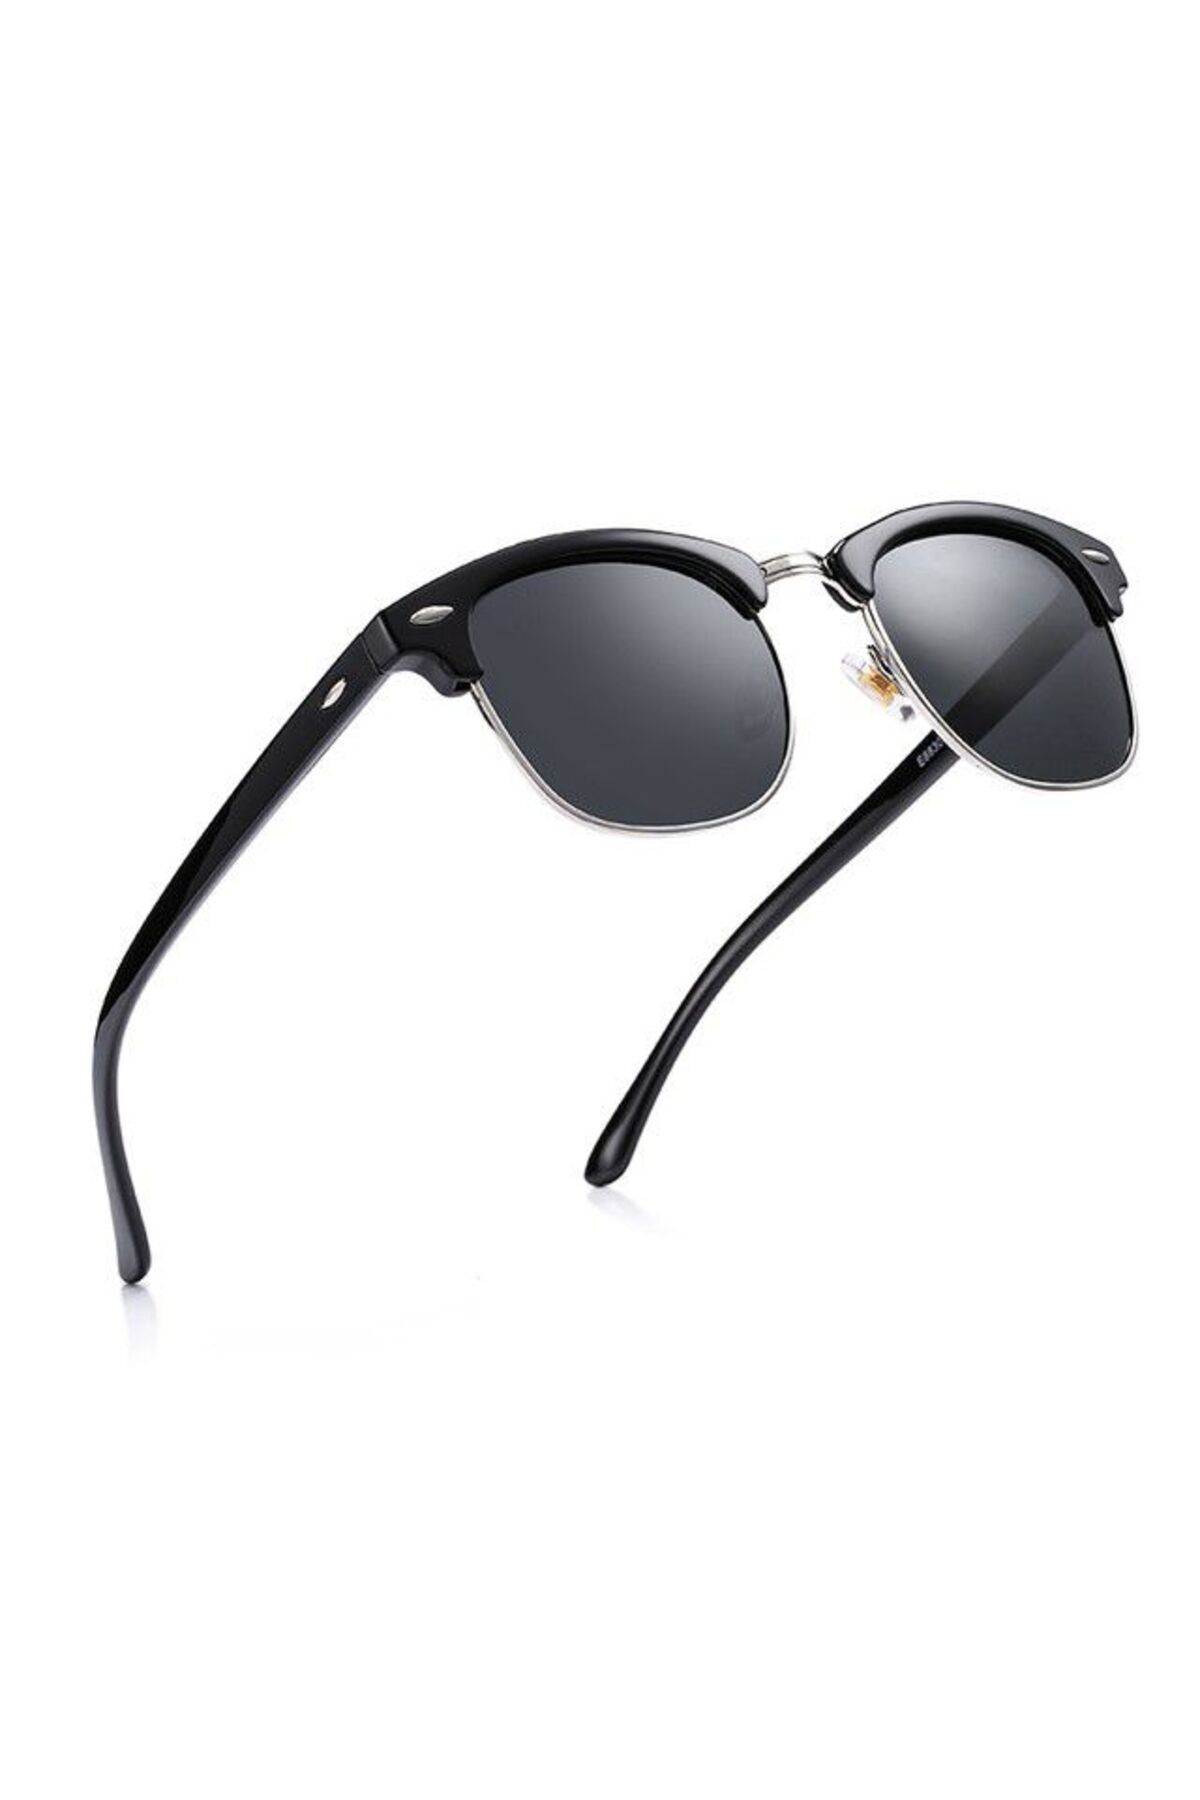 Jwl Klasik Yarım Çerçeve Retro Erkek Güneş Gözlüğü Tarz Imaj Gözlük Stil Moda Gözlük